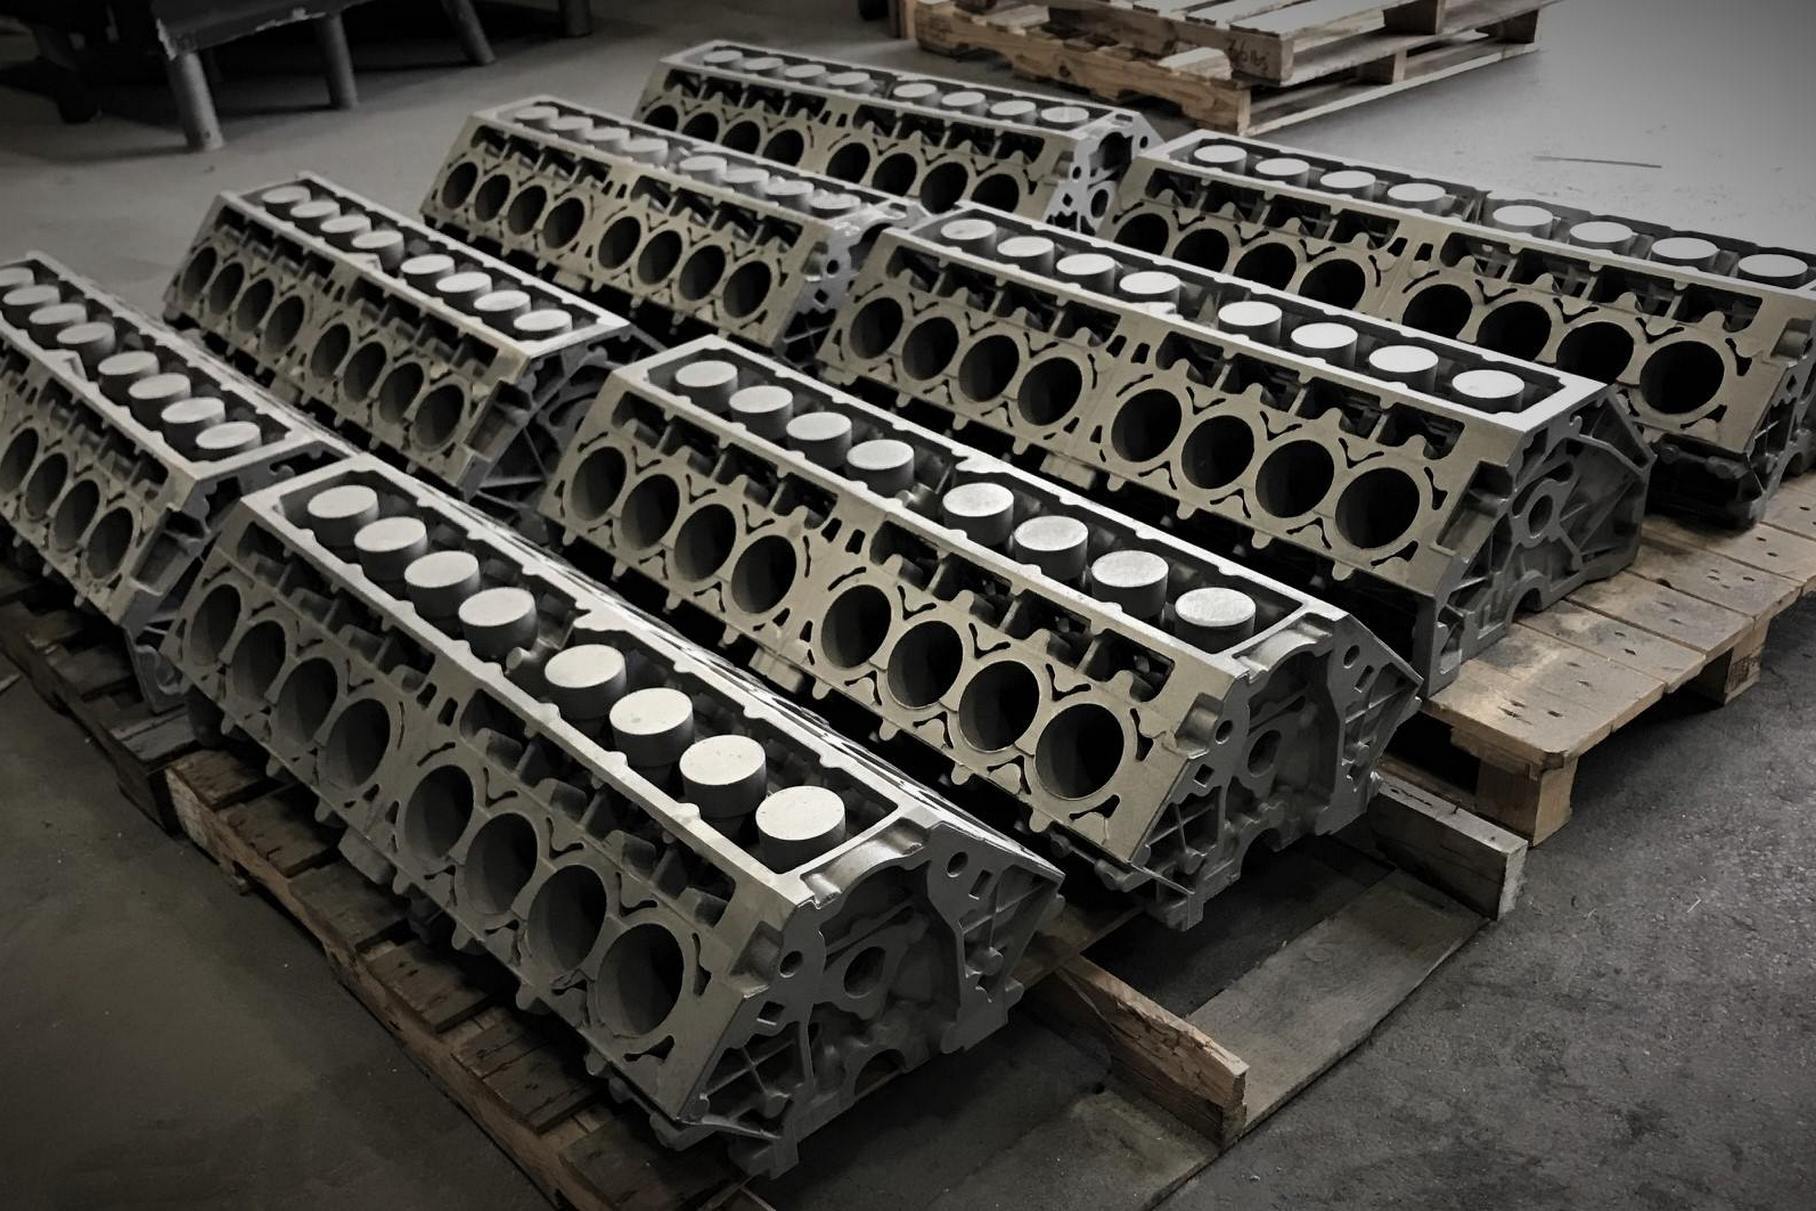 Практически всё производство на аутсорсе: блоки льют на фирме Wolverine Bronze в Детройте, собирают моторы в известном ателье Katech